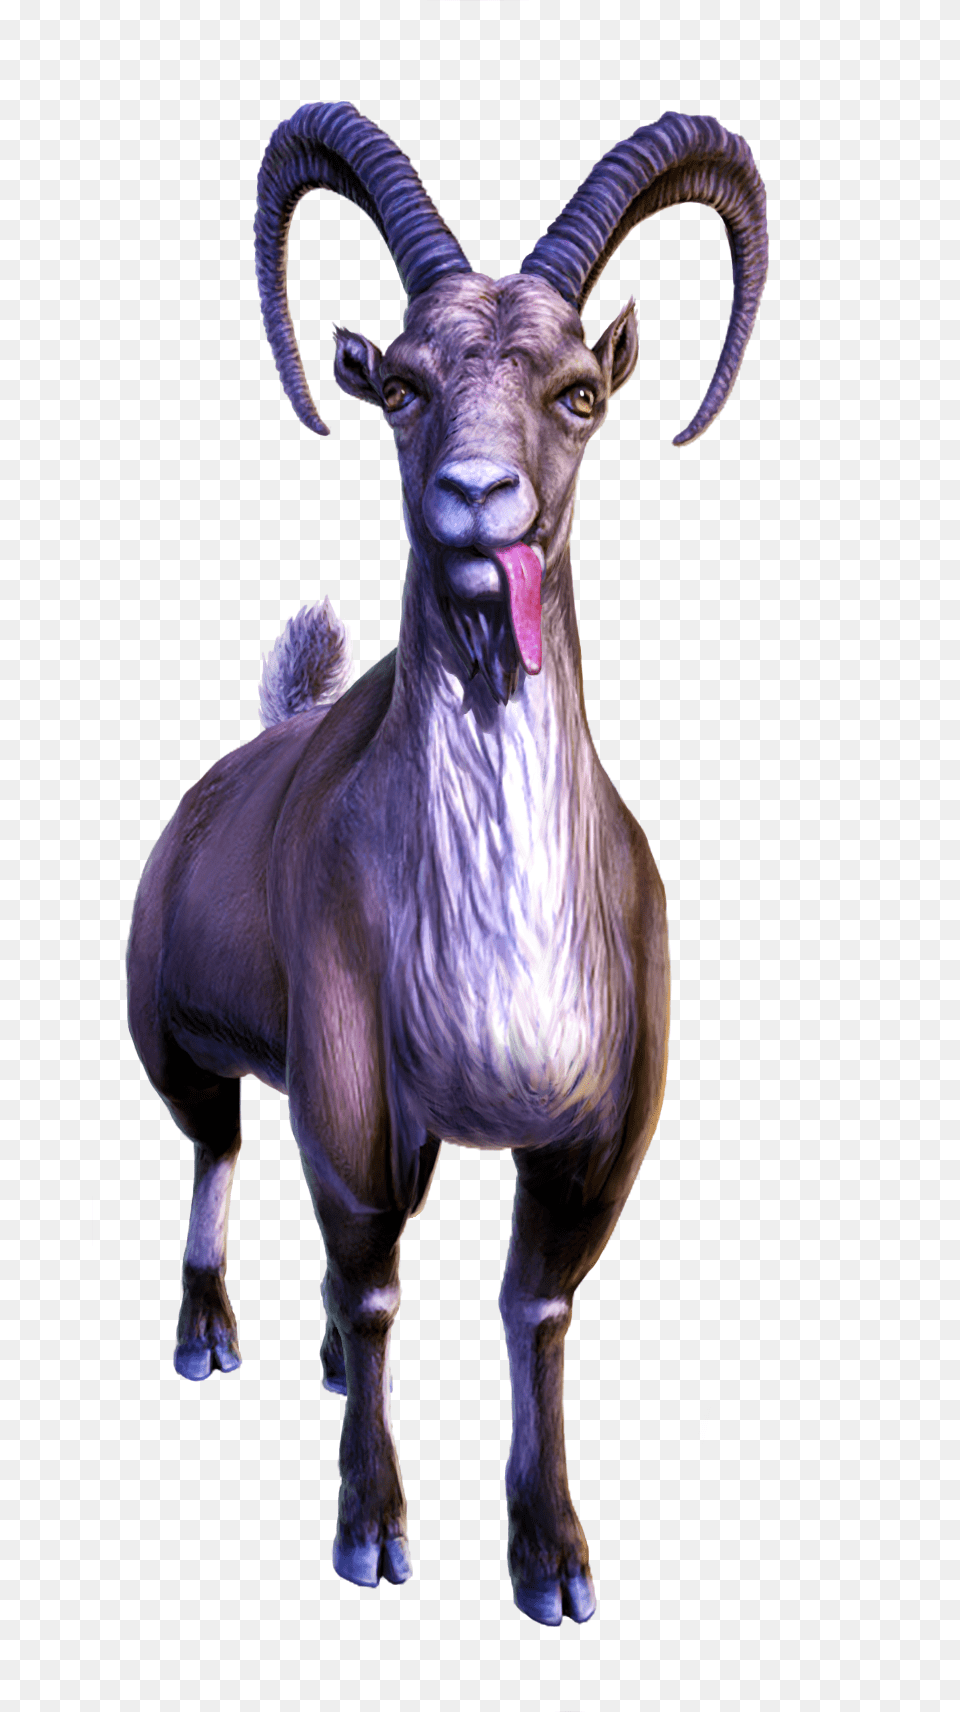 Enforcer Goat, Animal, Antelope, Mammal, Wildlife Png Image